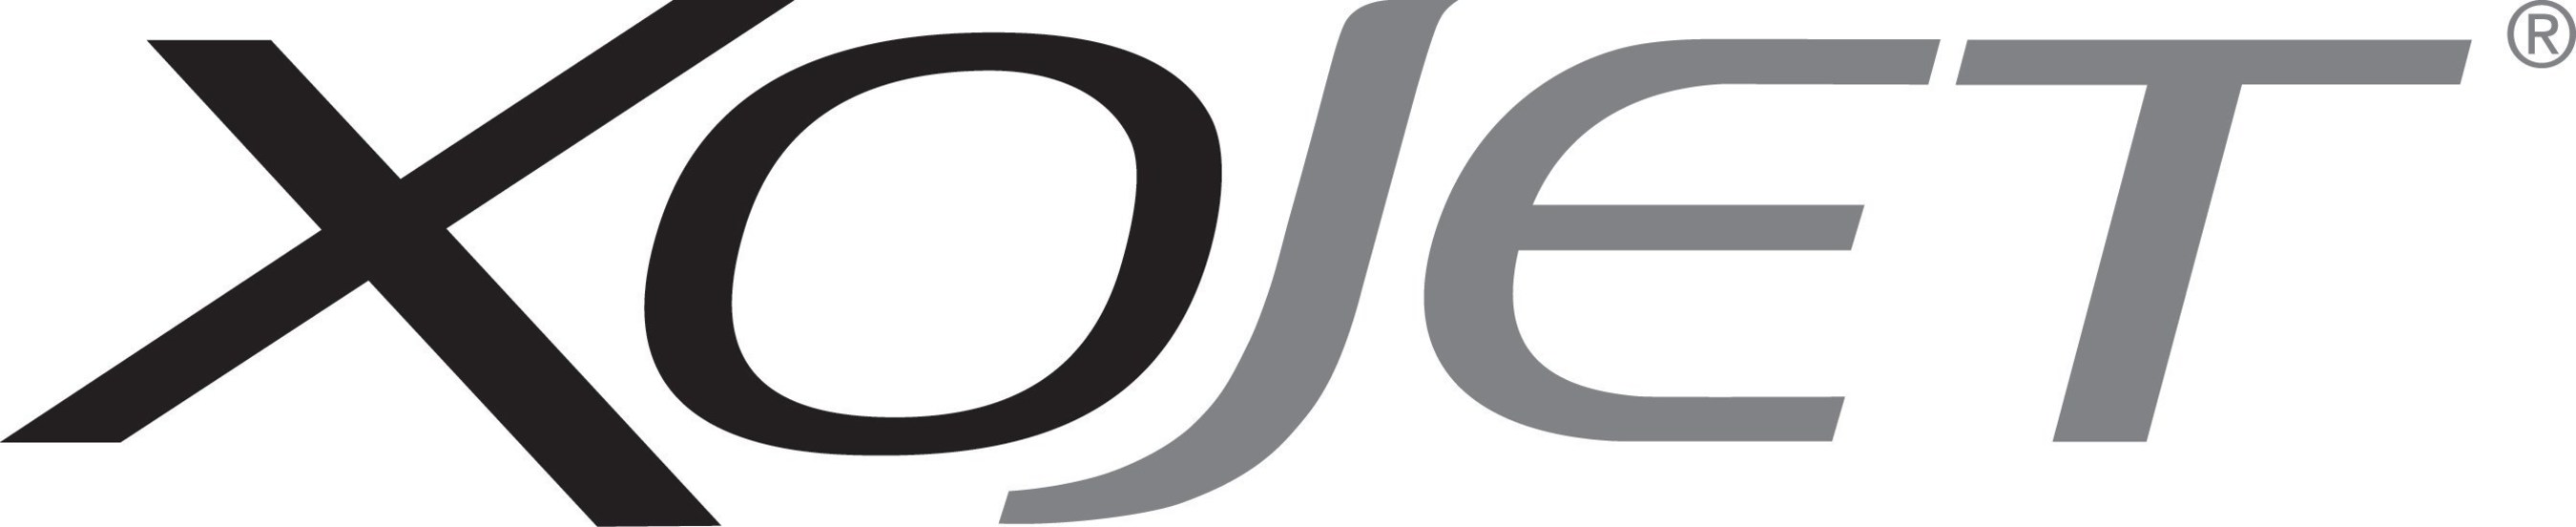 XOJET logo